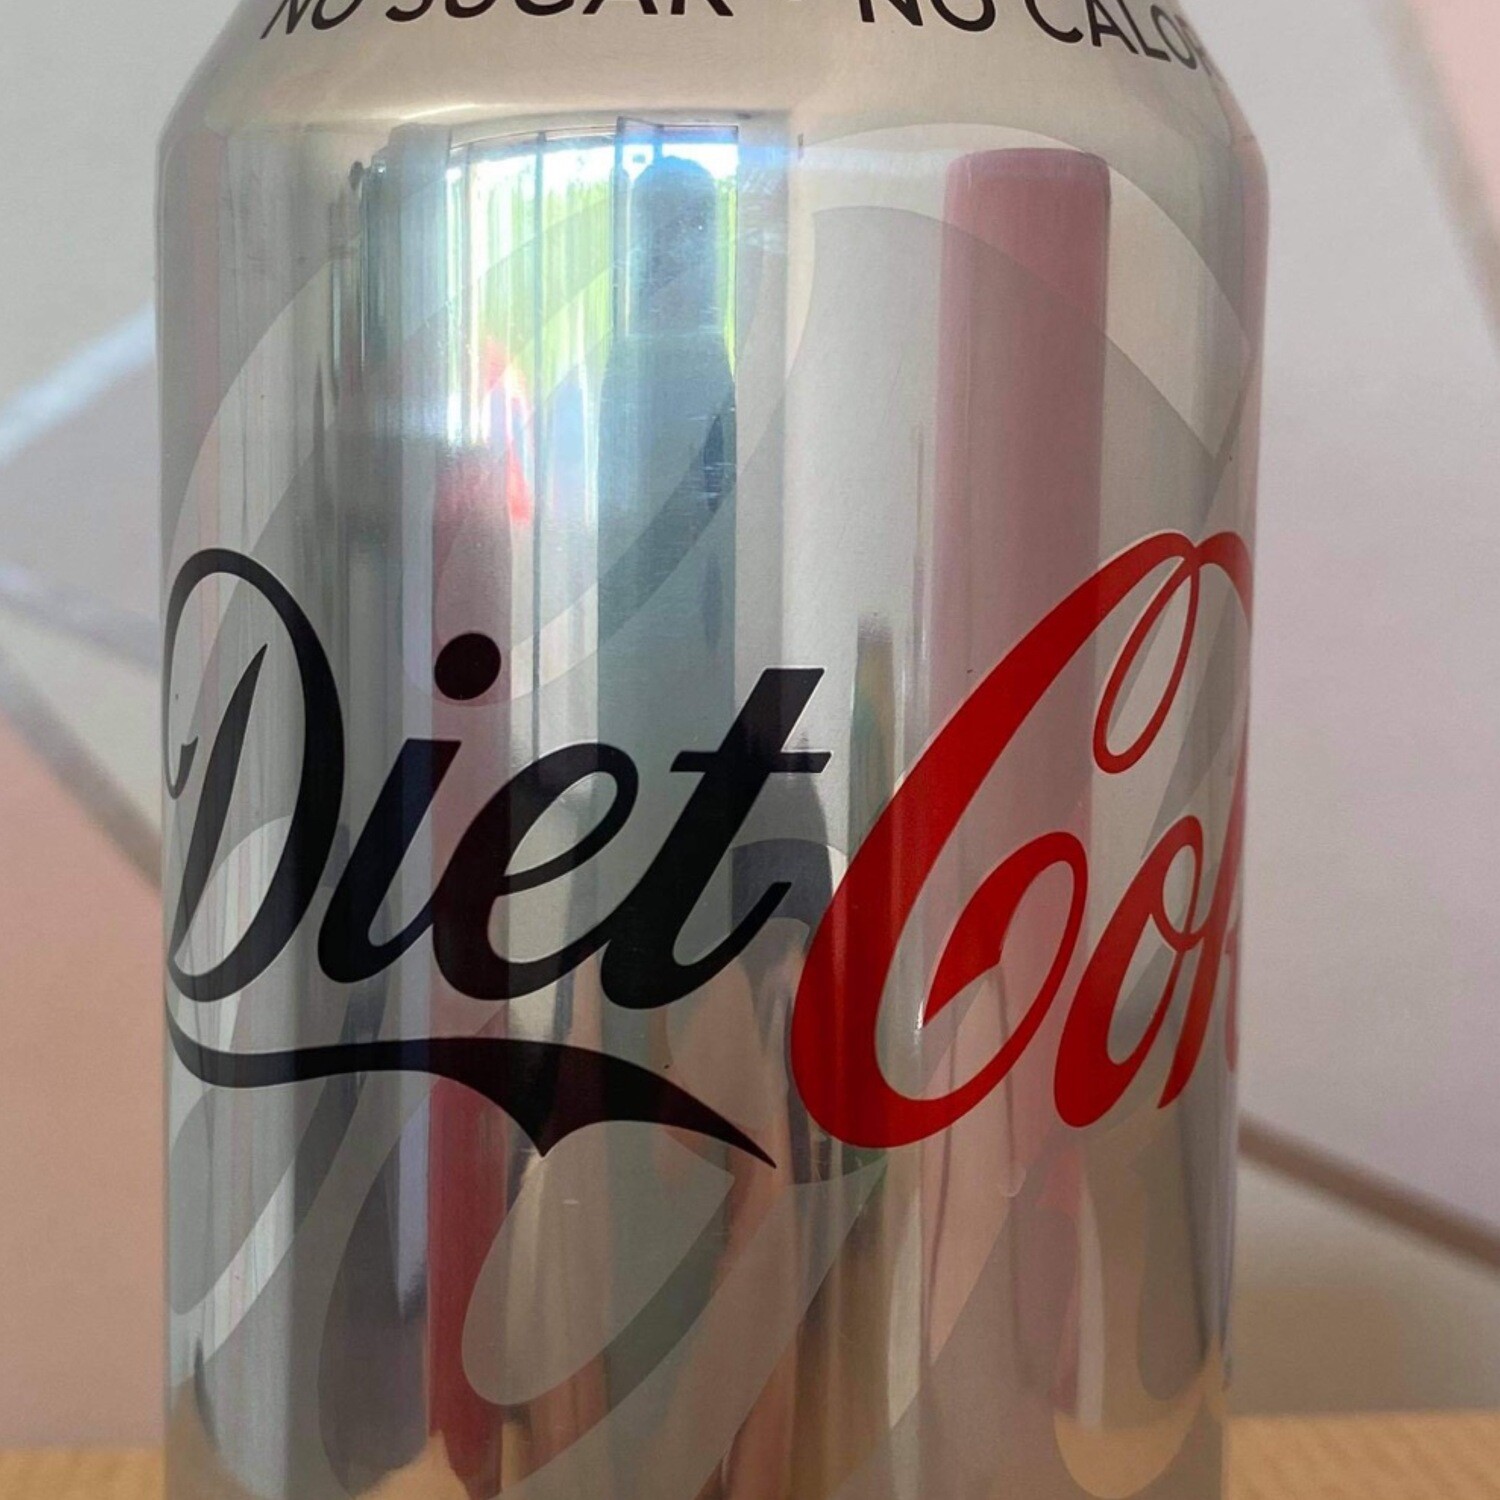 Diet Coke (330ml)